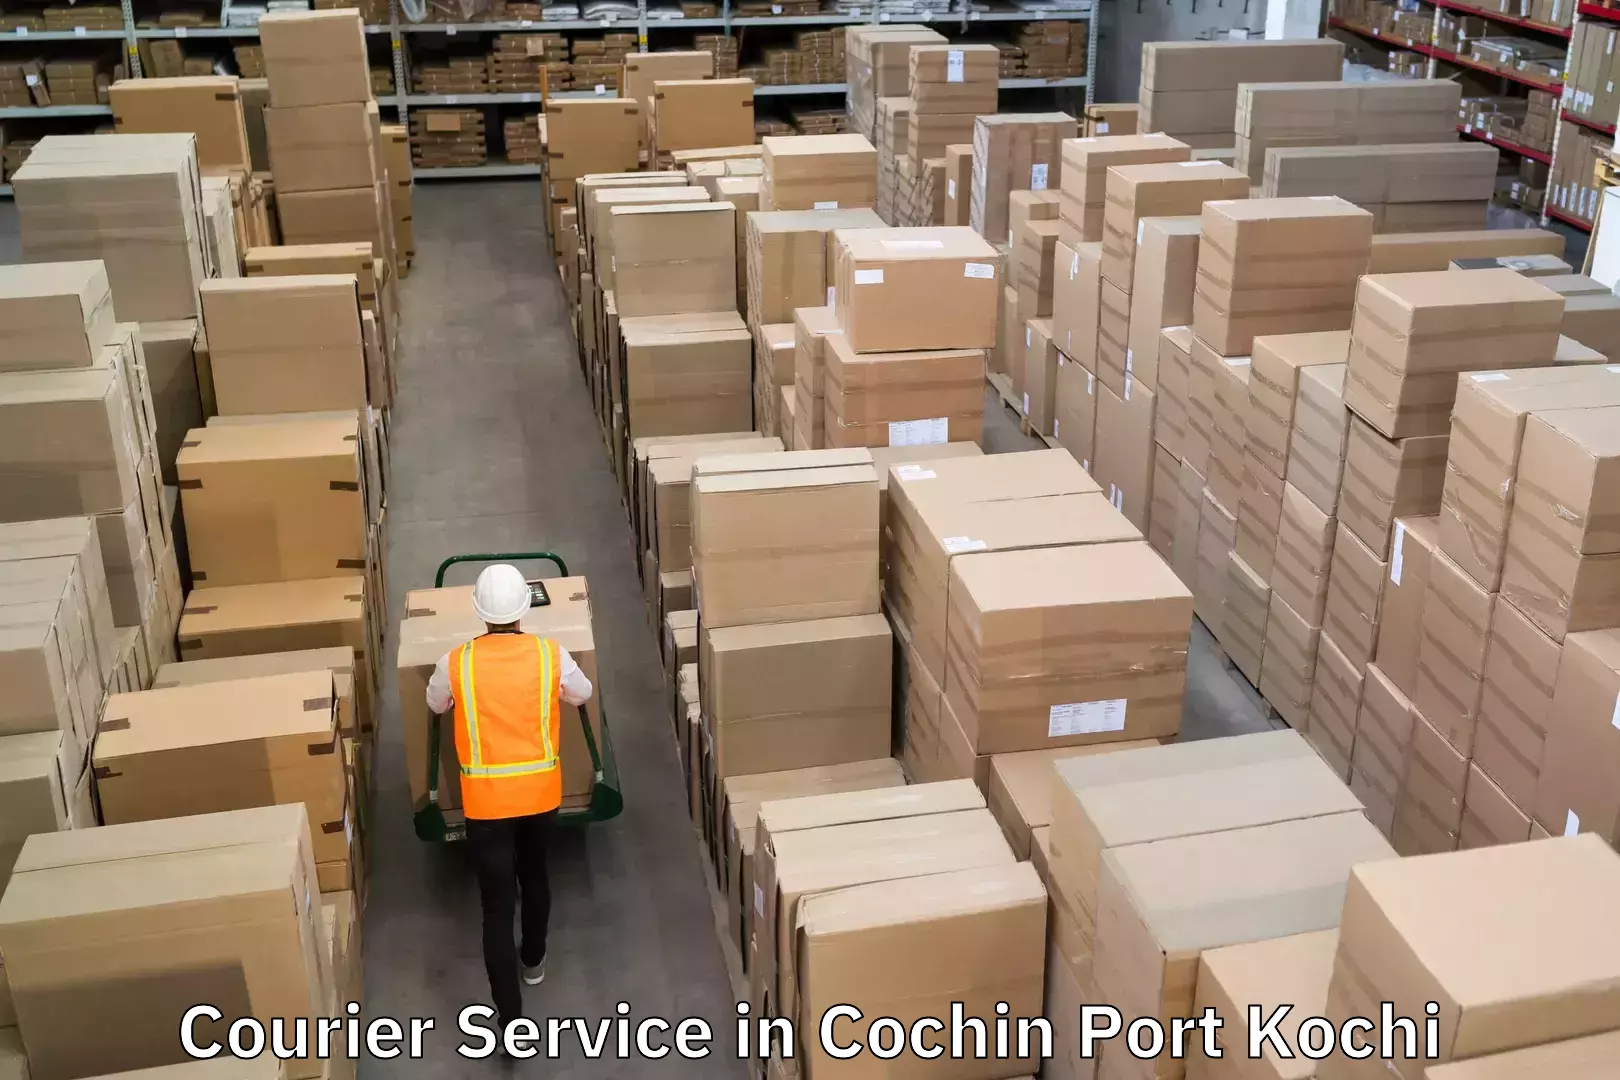 Speedy delivery service in Cochin Port Kochi